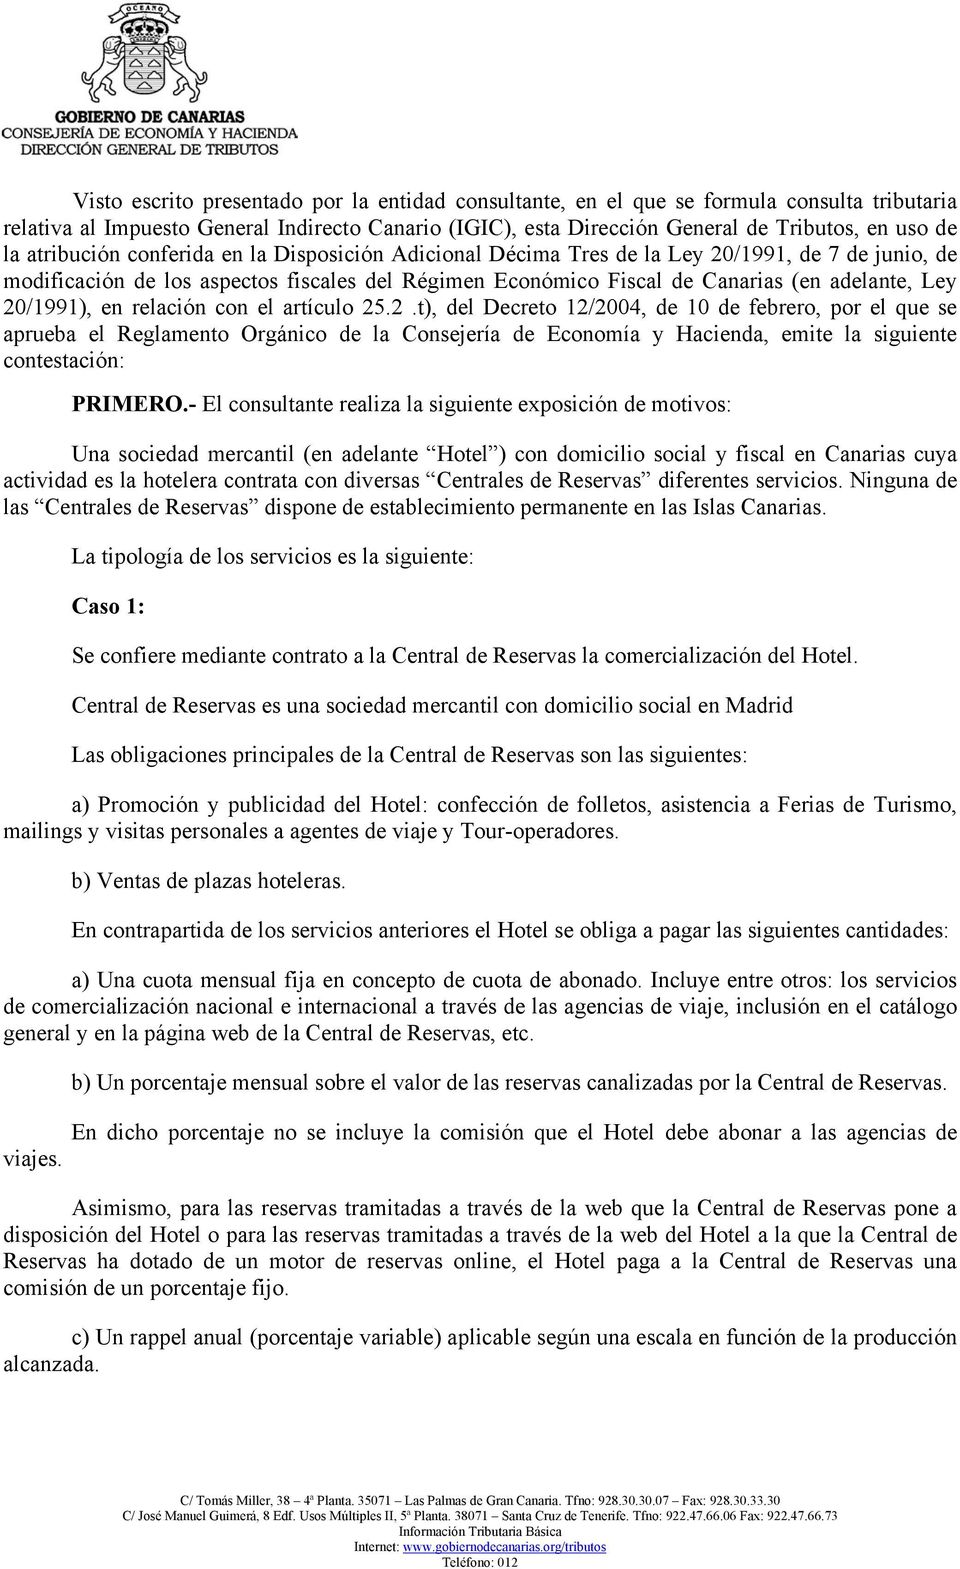 20/1991), en relación con el artículo 25.2.t), del Decreto 12/2004, de 10 de febrero, por el que se aprueba el Reglamento Orgánico de la Consejería de Economía y Hacienda, emite la siguiente contestación: PRIMERO.